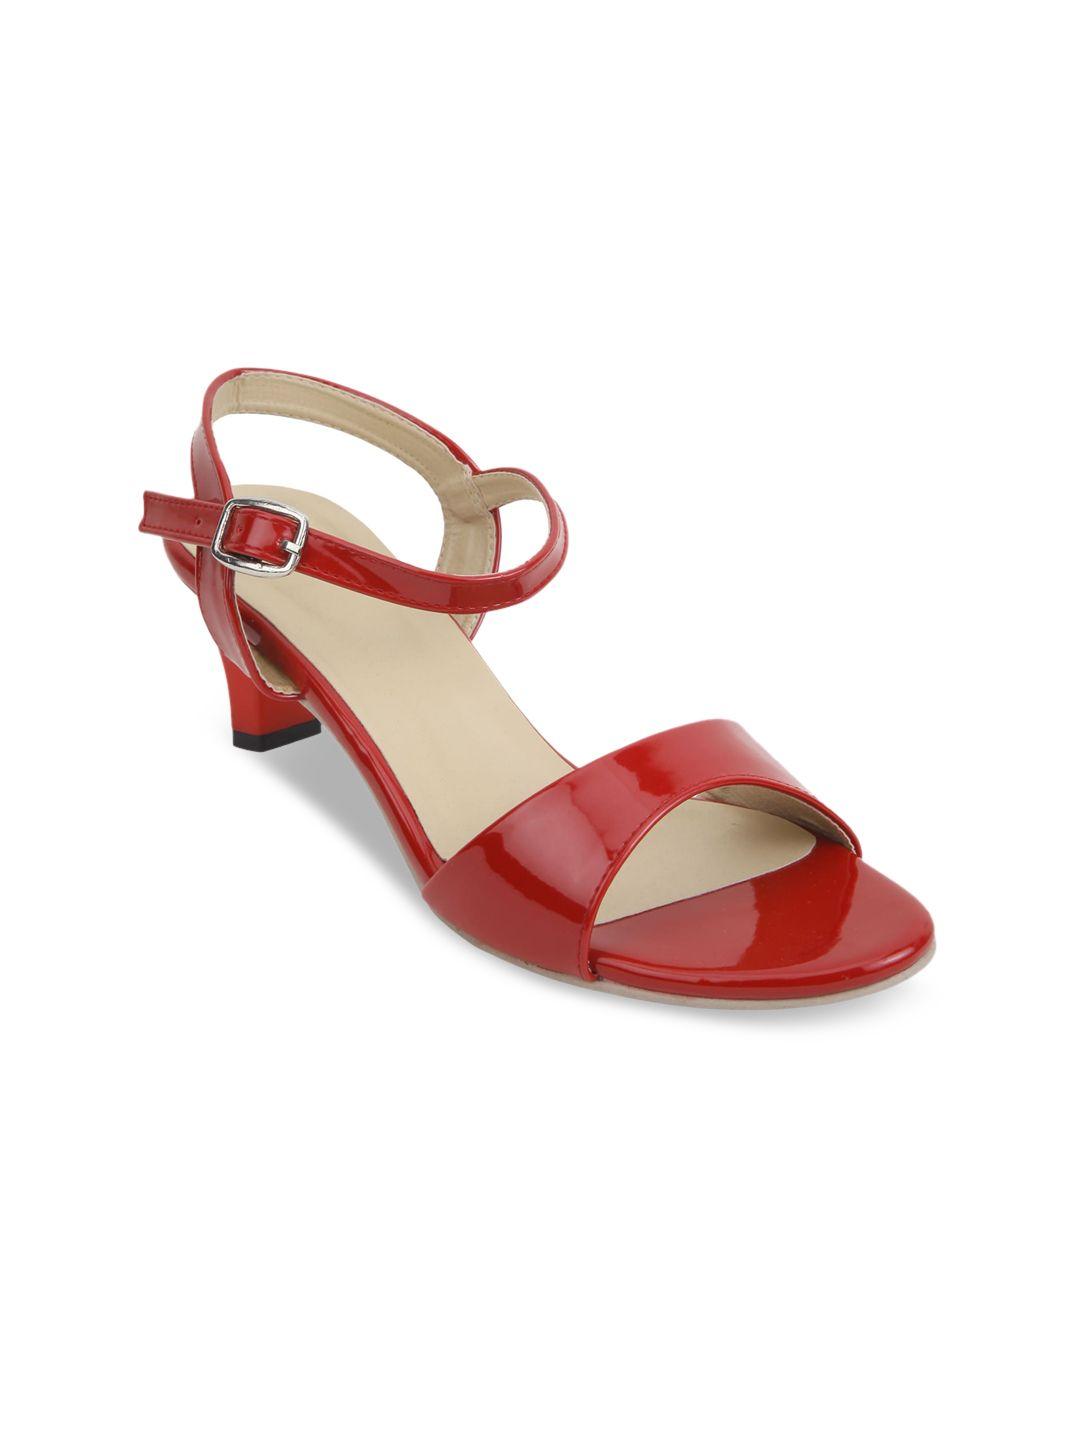 glitzy-galz-red-block-sandals